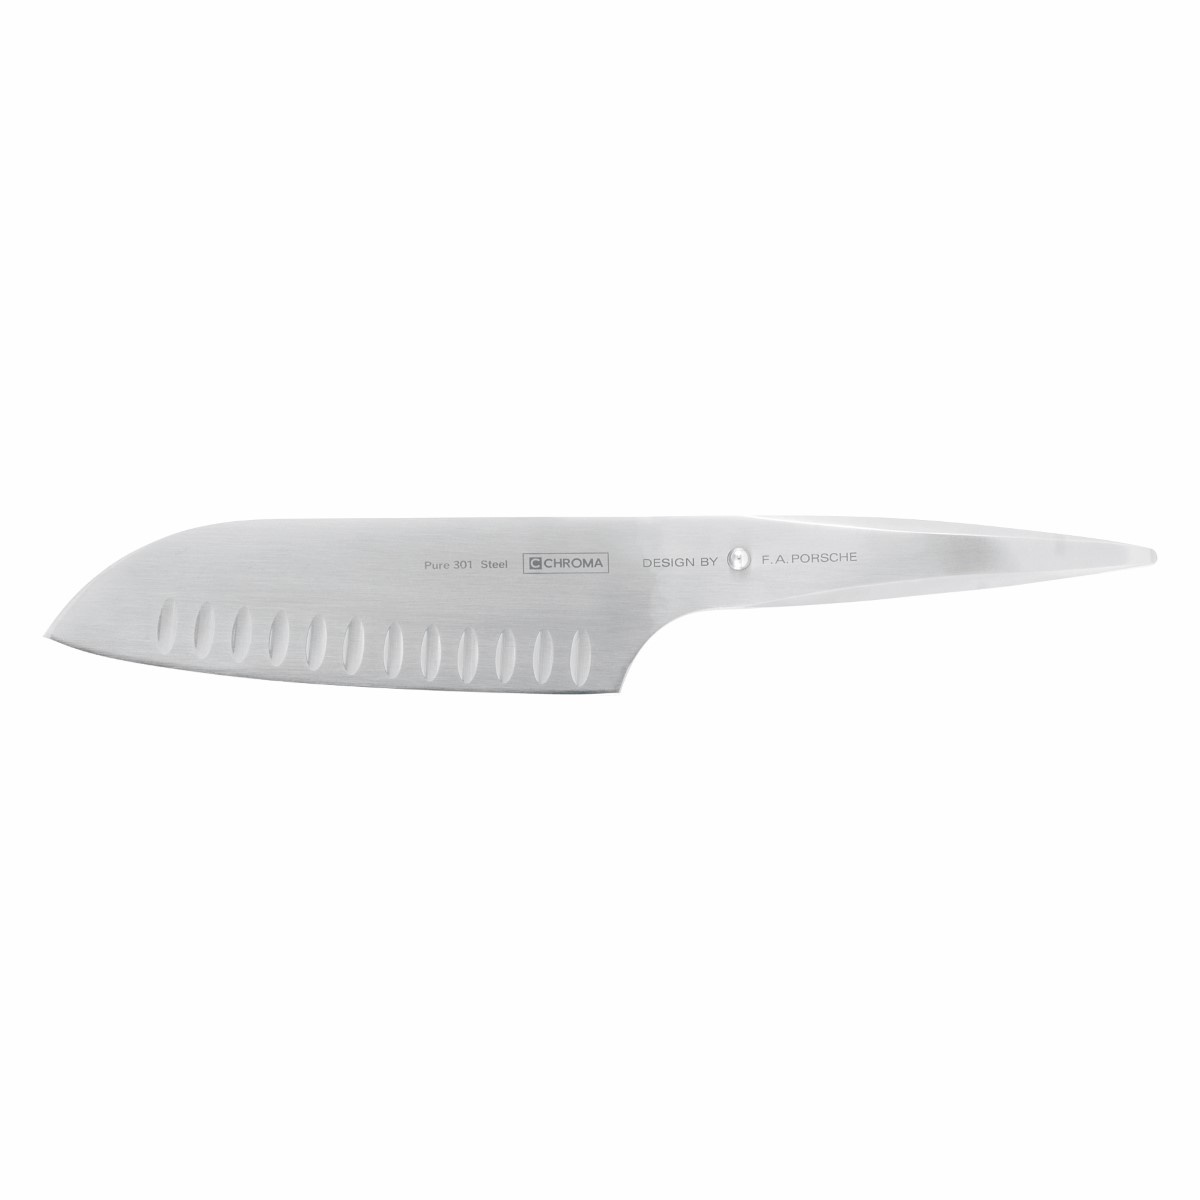 Chroma – Type 301 Kockkniv med hål japansk 18 cm